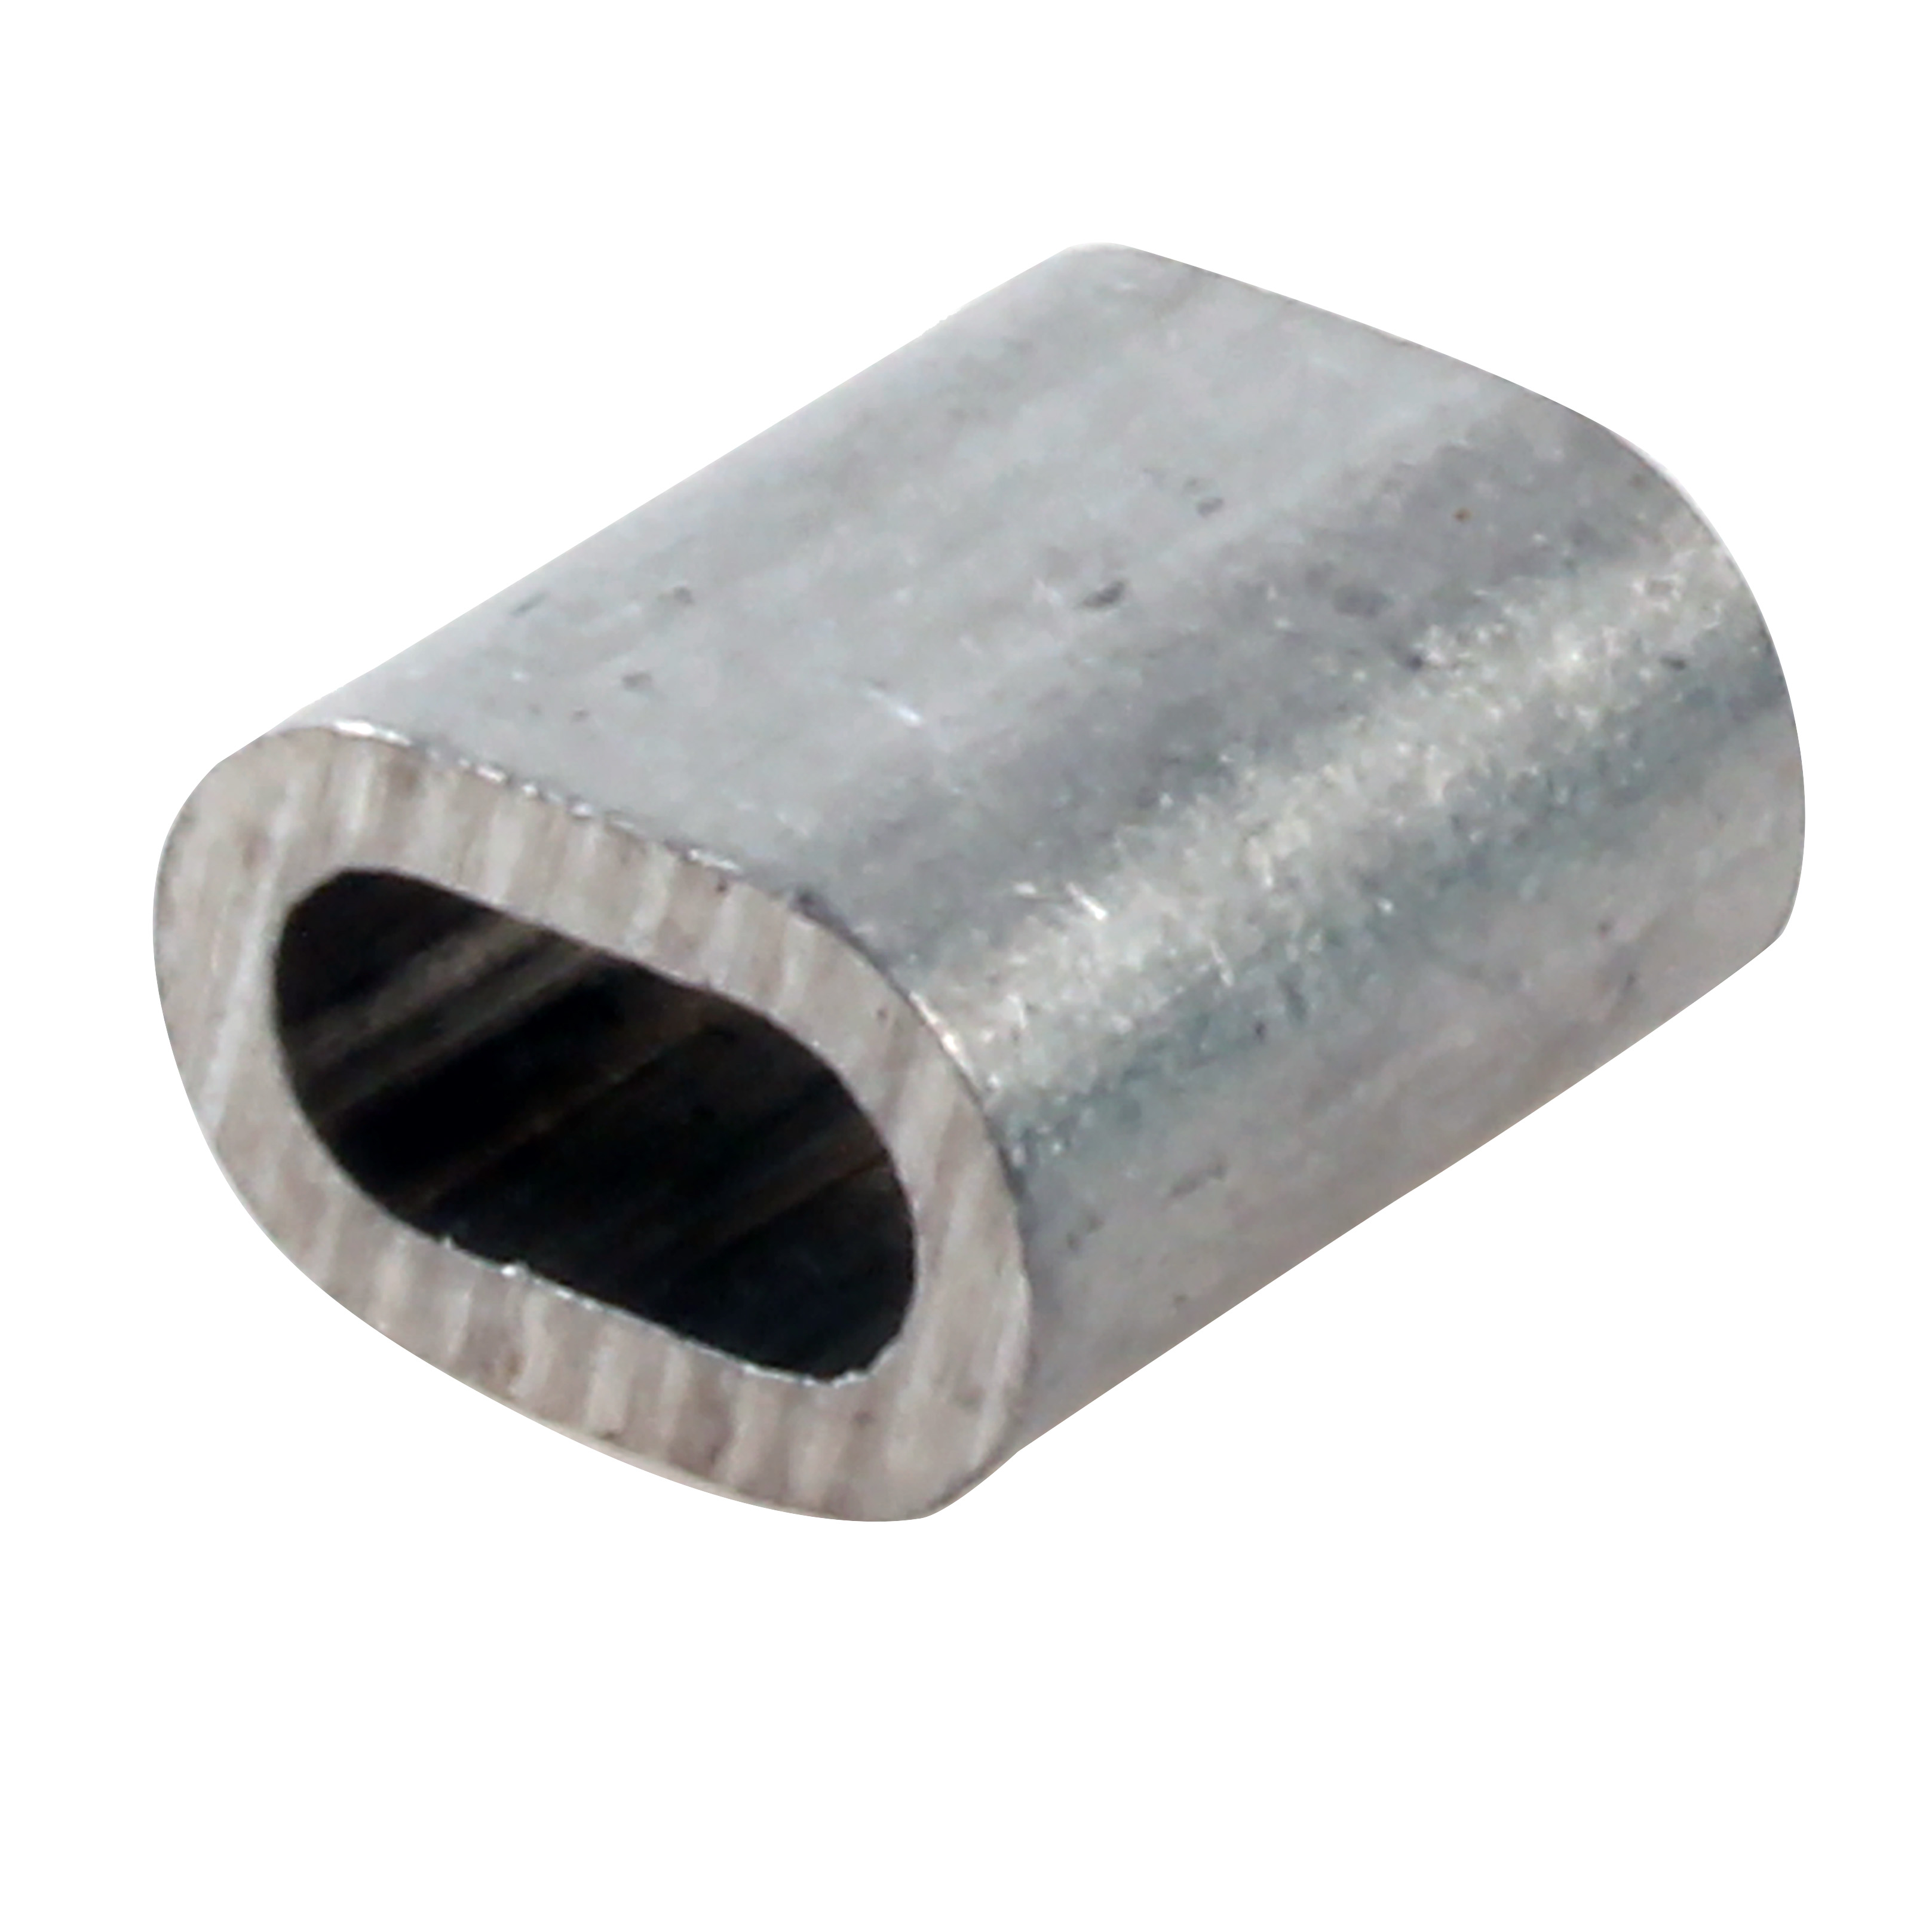 Manchon pour câble d'accastillage - Pour sertir un câble acier - Aluminium brut - 100° C maxi.